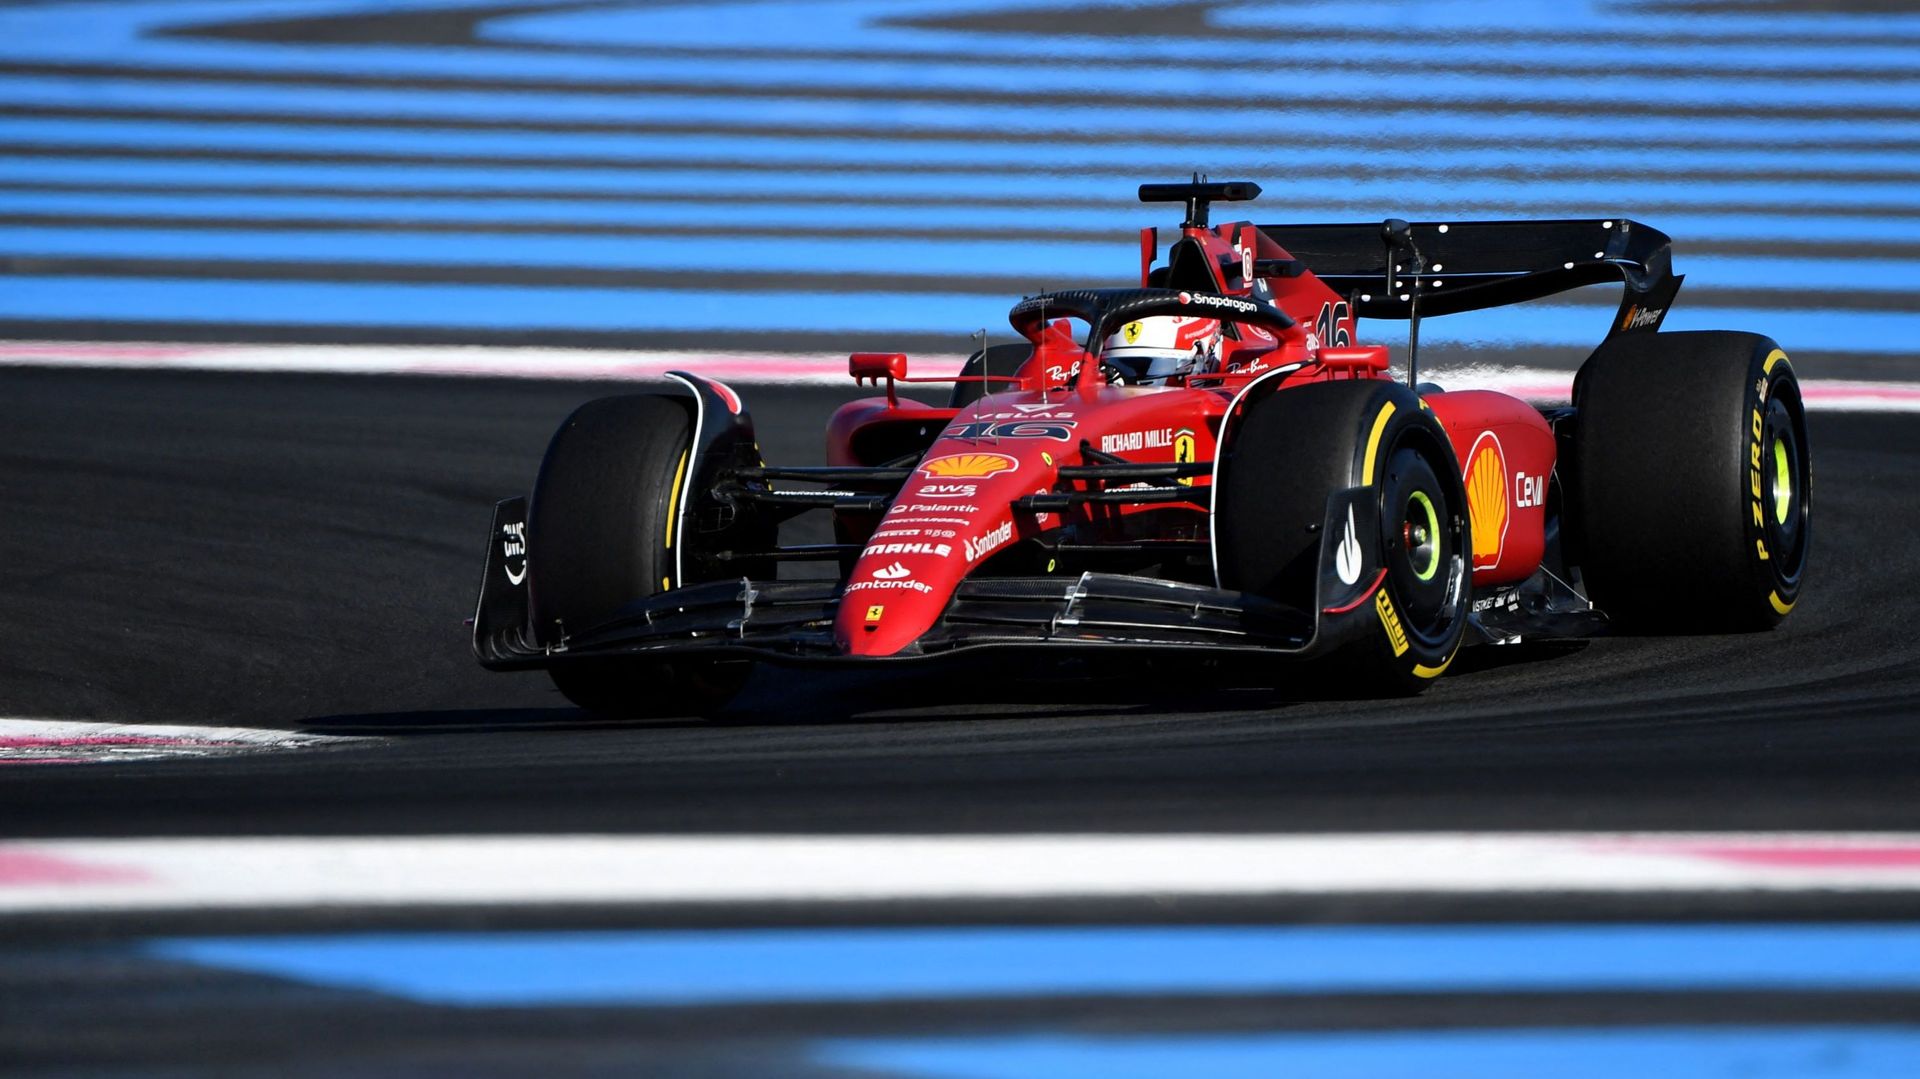 Le débriefing de Gaëtan Vigneron : "Les Ferrari sont bien dans le coup, contrairement aux Red Bull"